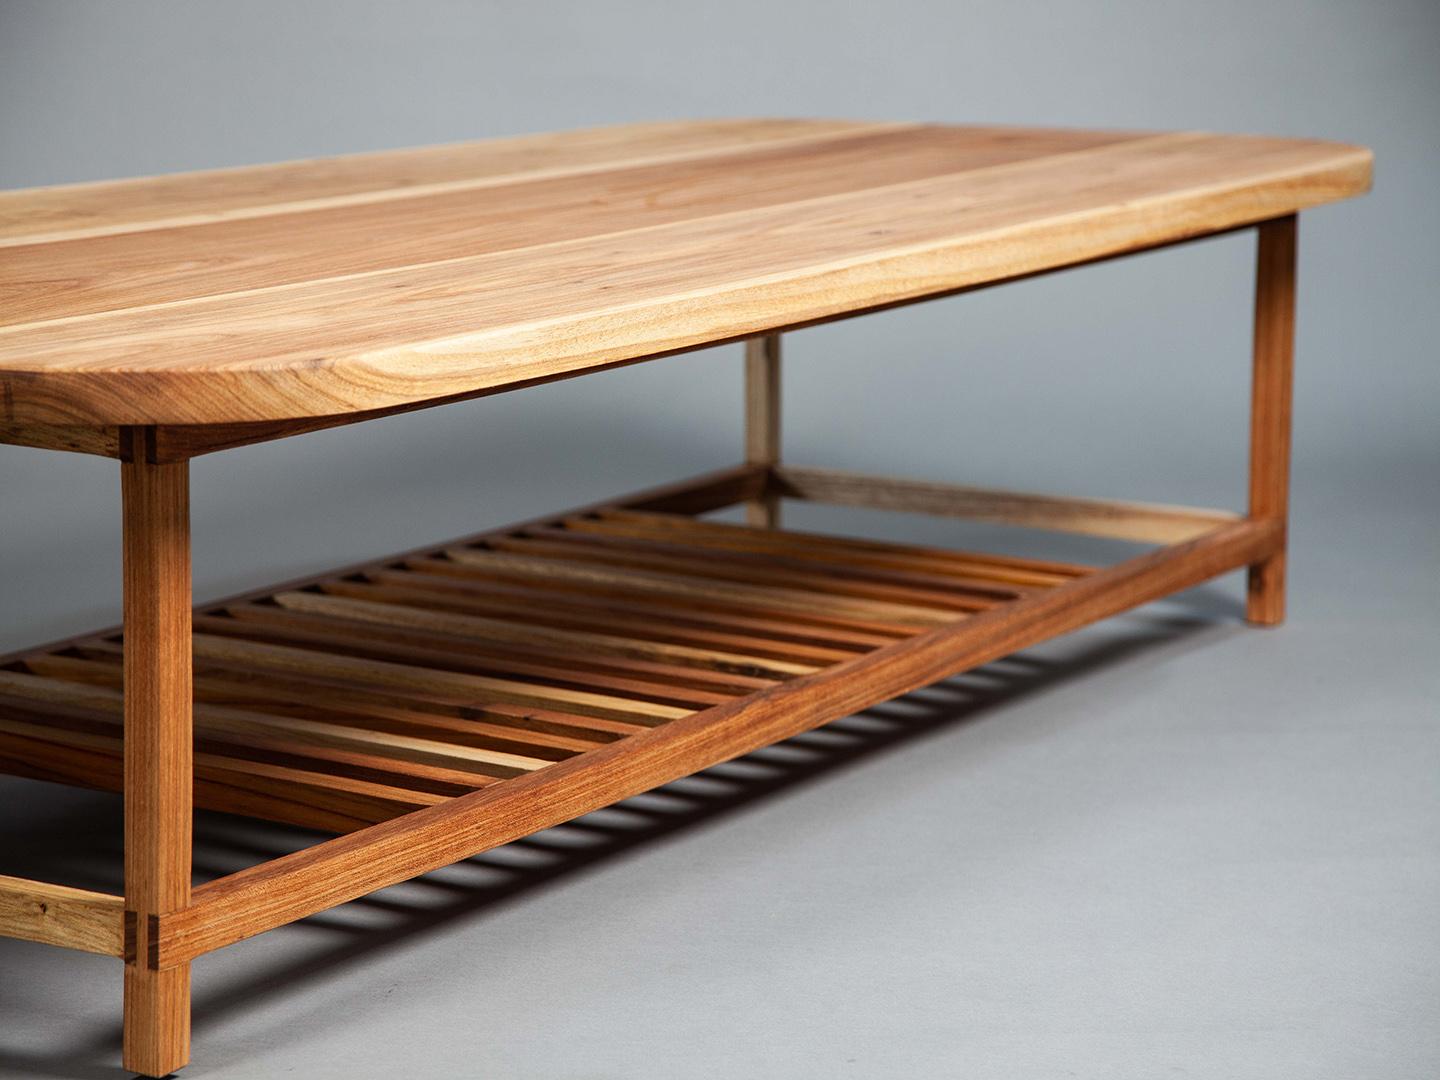 Der Slatted Coffee Table verbindet nahtlos die geraden Linien seines Gestells mit dem abgerundeten Design seiner Tischplatte und schafft so ein harmonisches und elegantes Möbelstück. Unter der Tischplatte befindet sich ein Lattenrost, der dem